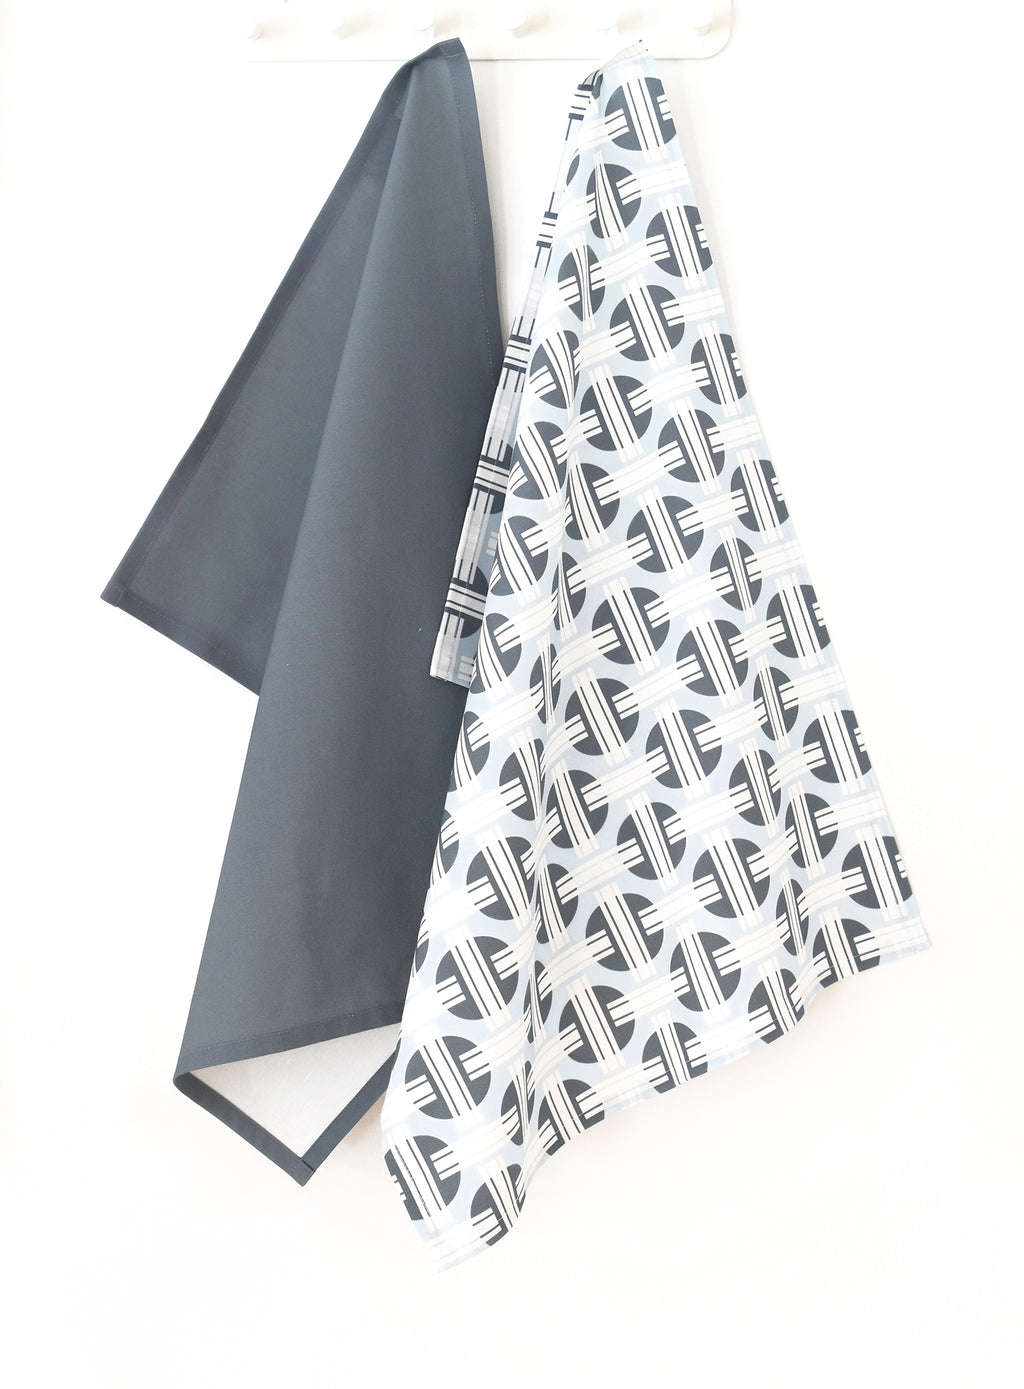 Orient Linen Cotton Tea Towel (18.5x25) – Set of 2 (Patterned Pale Blue & Solid Charcoal)